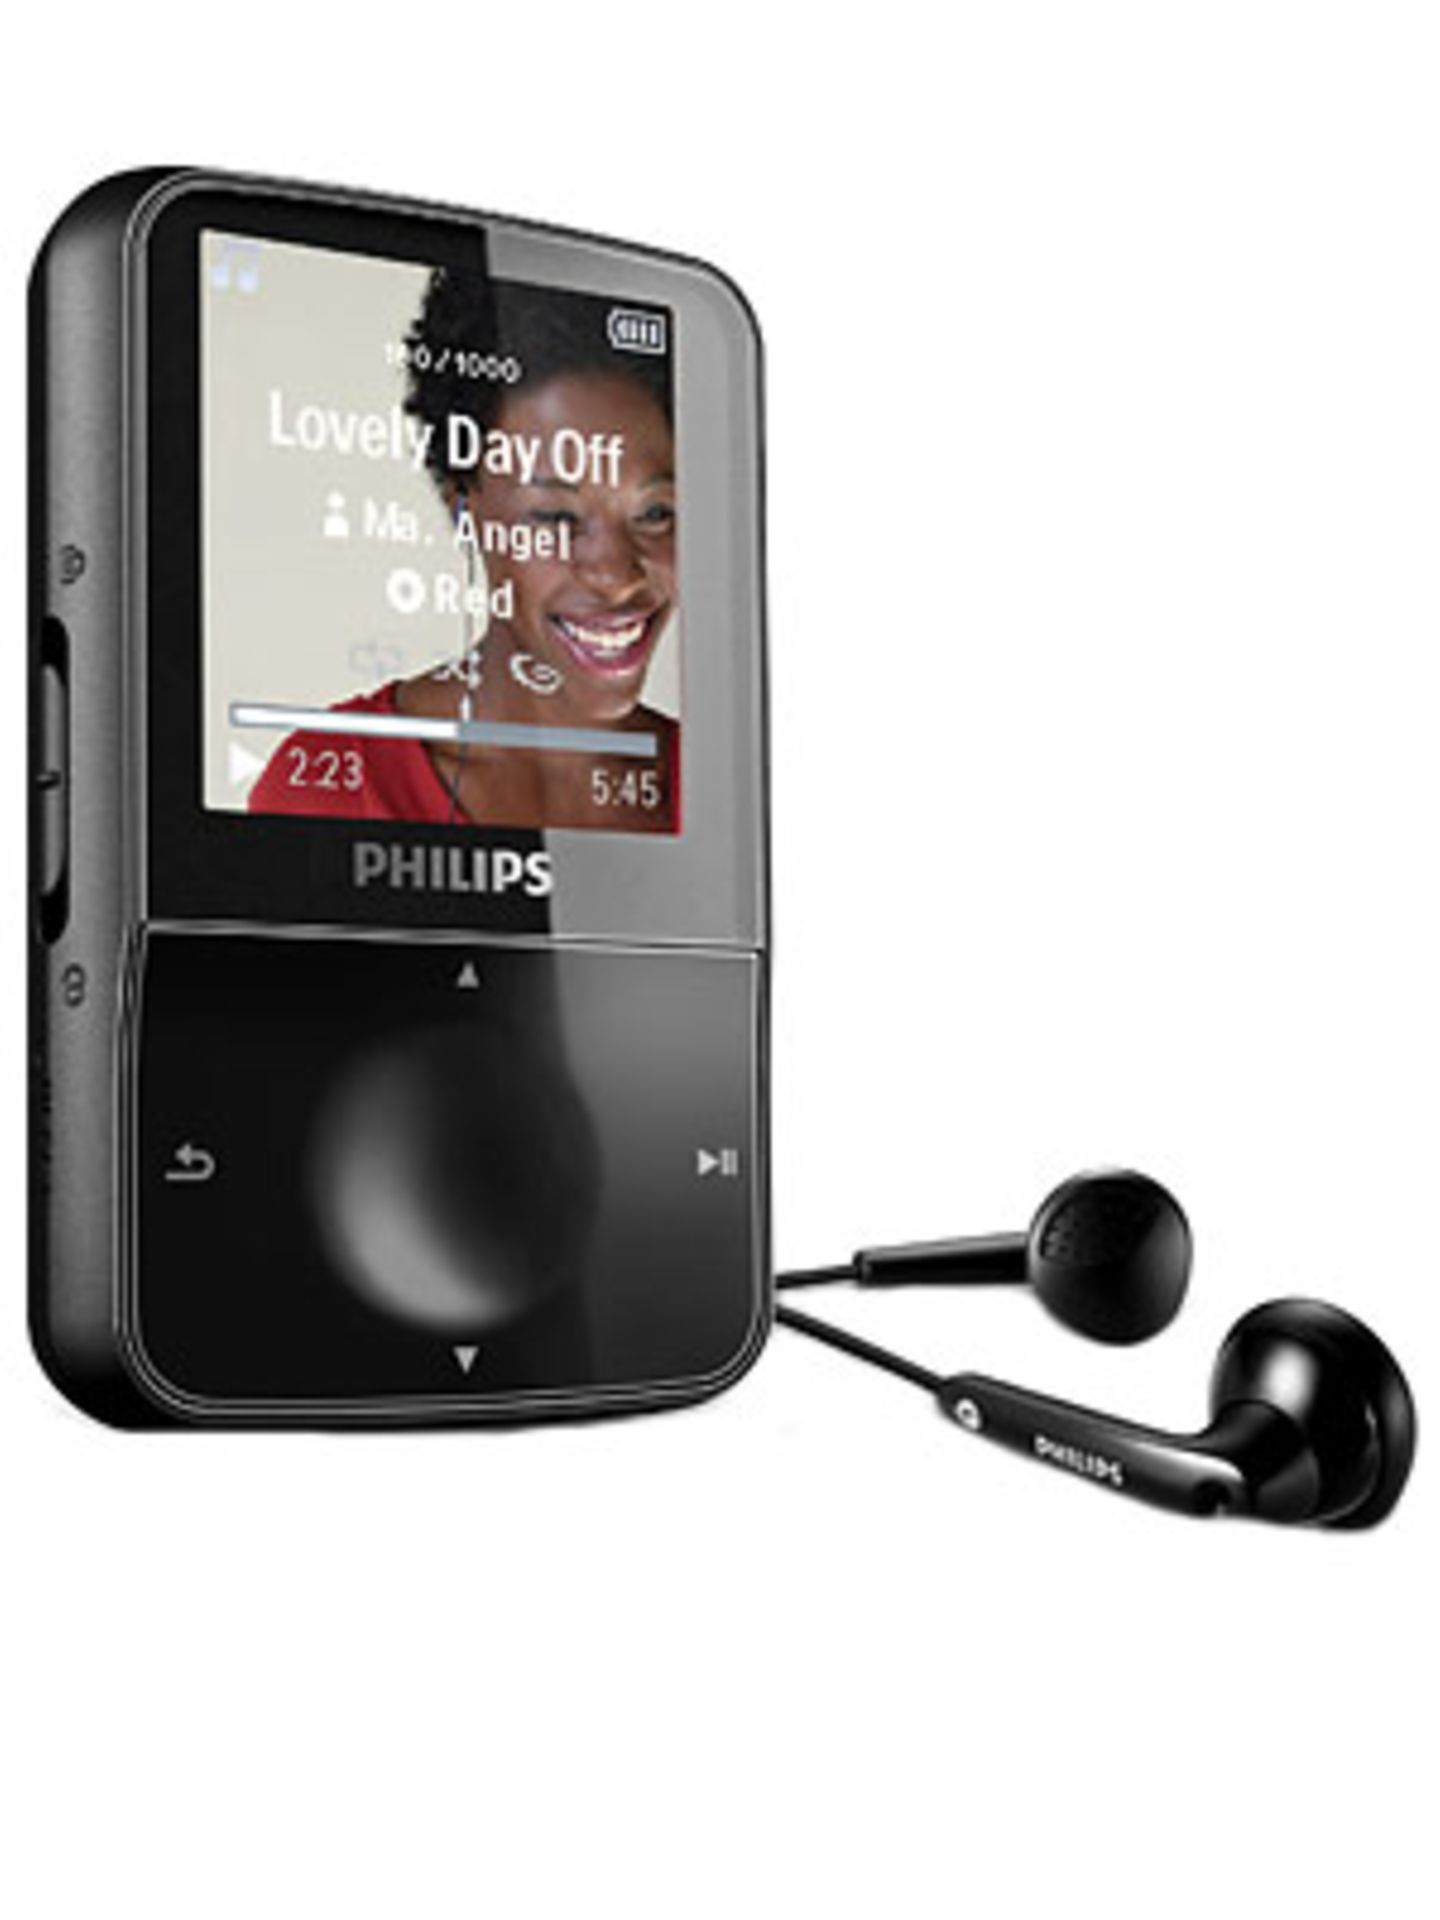 Schnörkellos, schlank und elegant ist das Design des Philips GoGear Vibe MP3-Players. Auf seinem 1,5"-Farbdisplay (3,8 cm) könnt ihr euch ganz einfach durch die Dateien scrollen. Um 90 Euro. Mehr zum  Philips Vibe findet ihr bei "Philips".